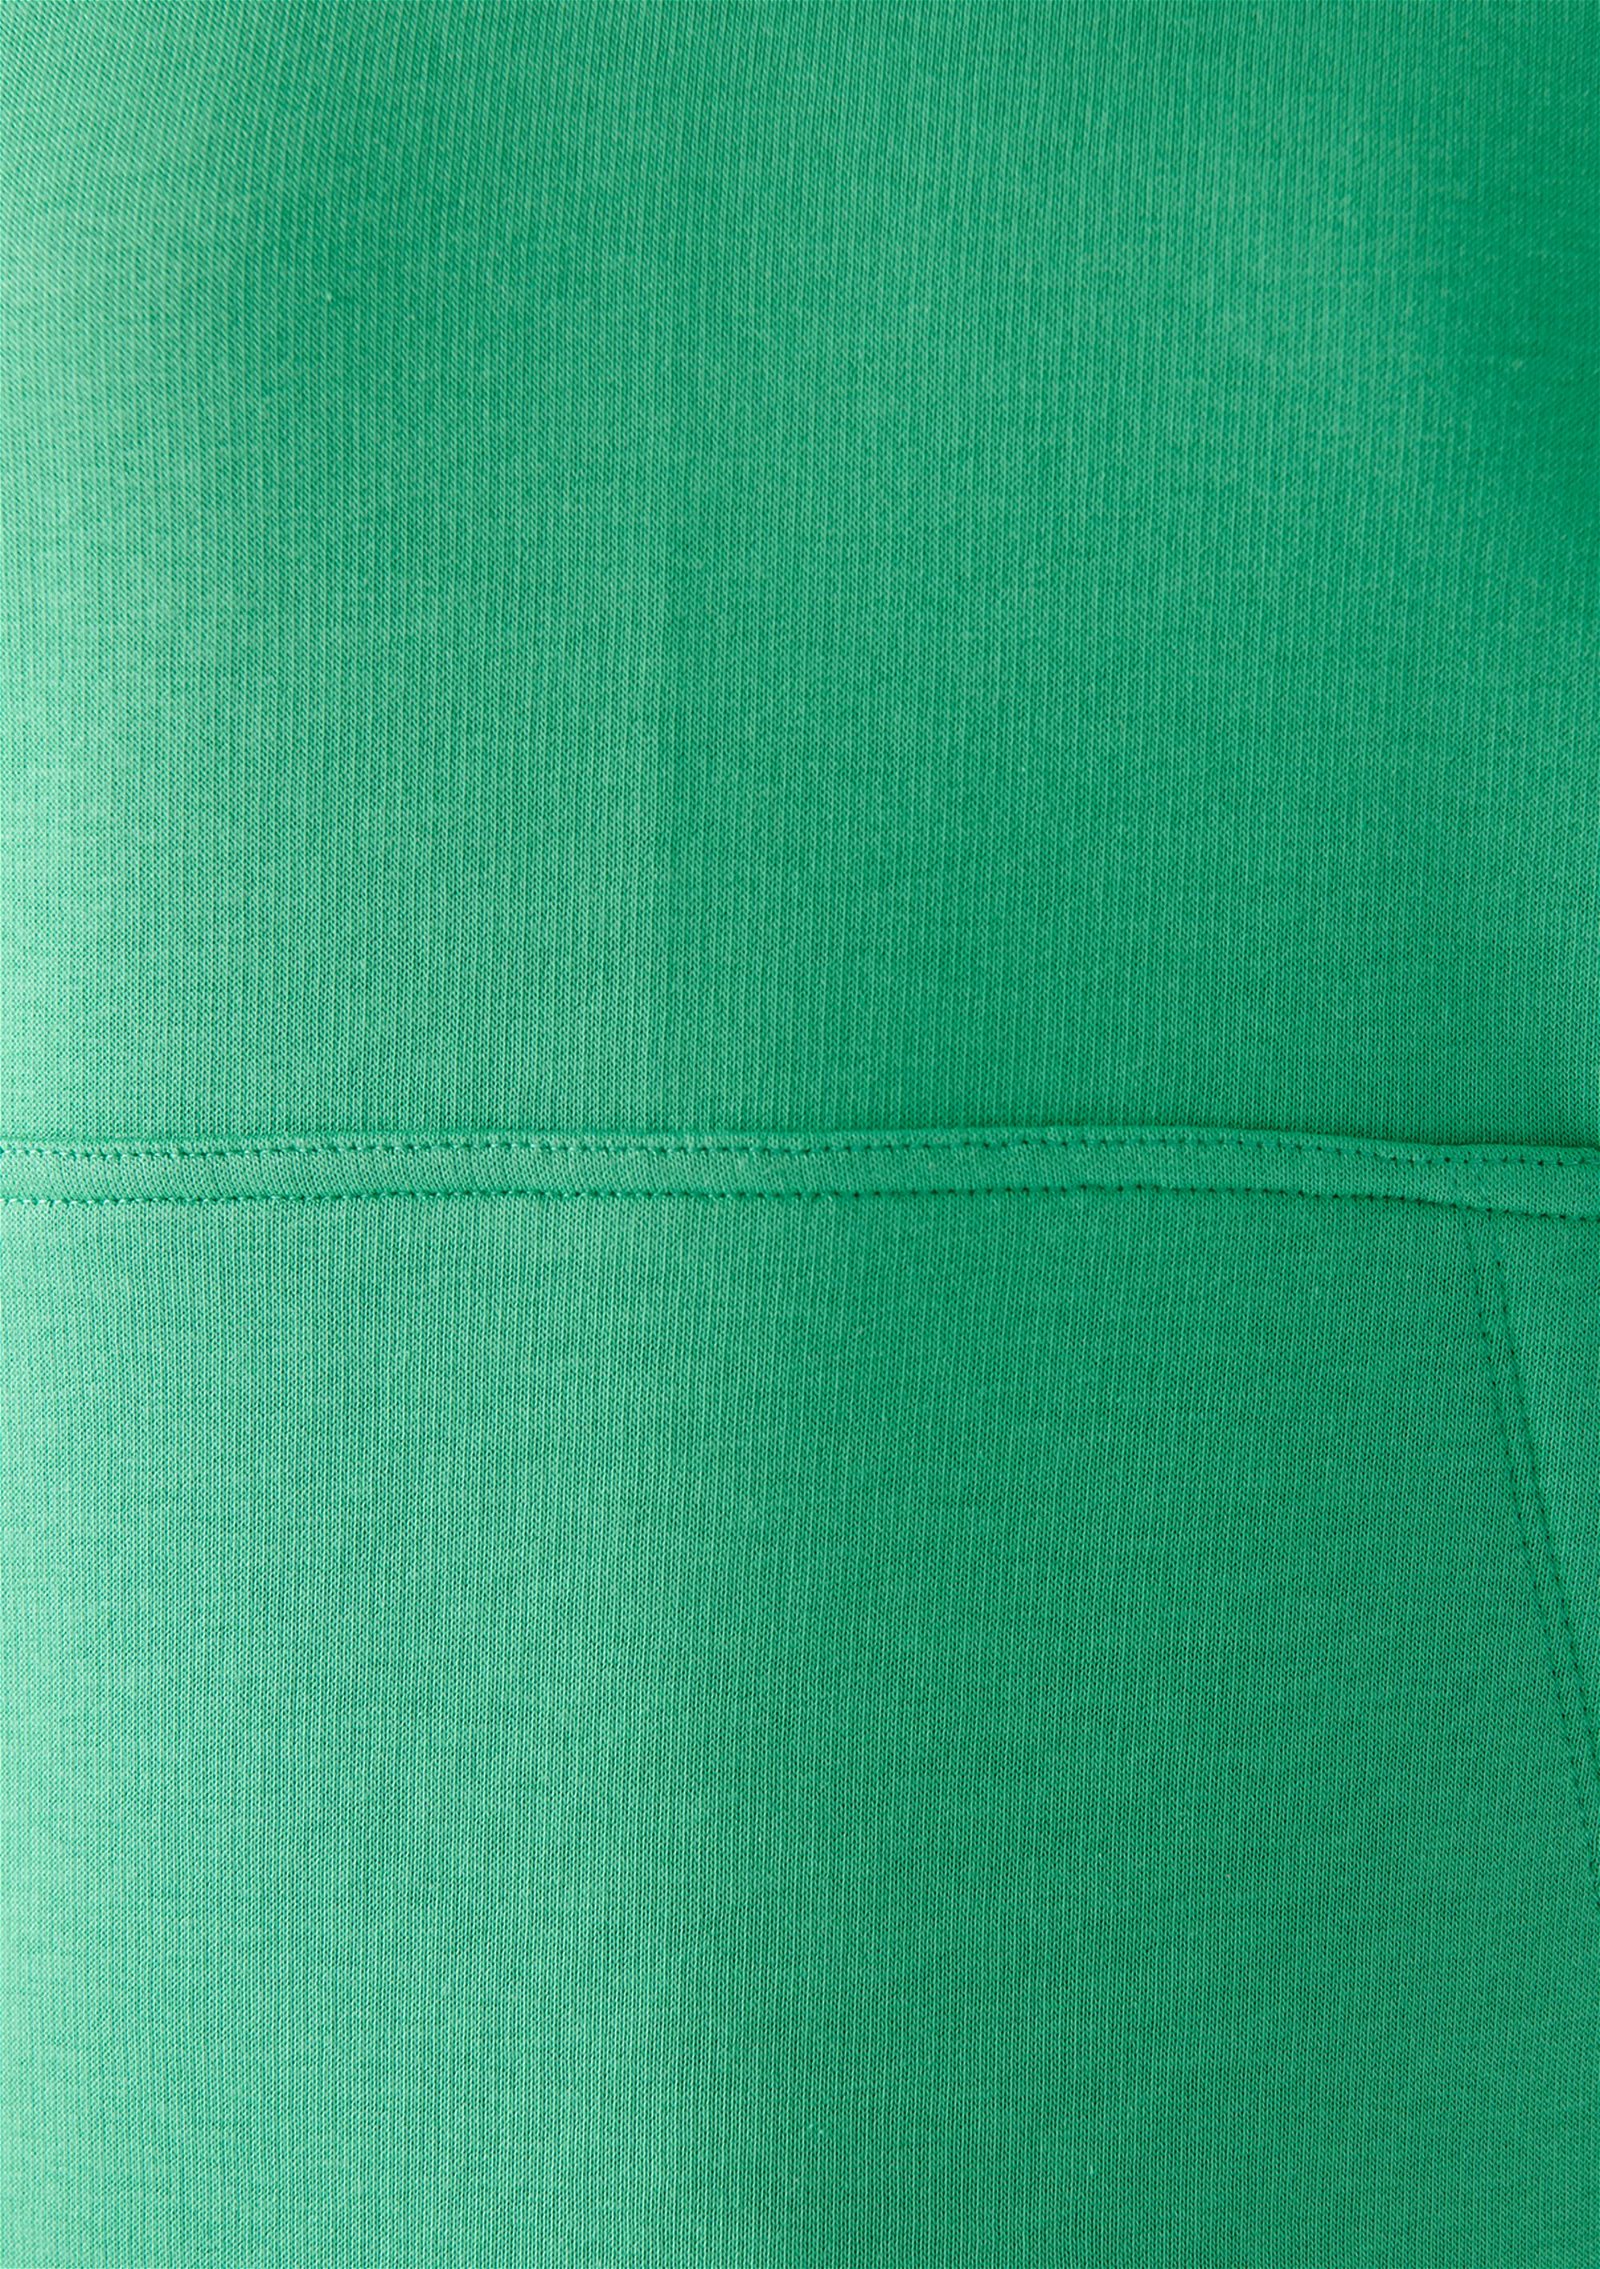 Mavi Kapüşonlu Yeşil Basic Sweatshirt 167299-71794